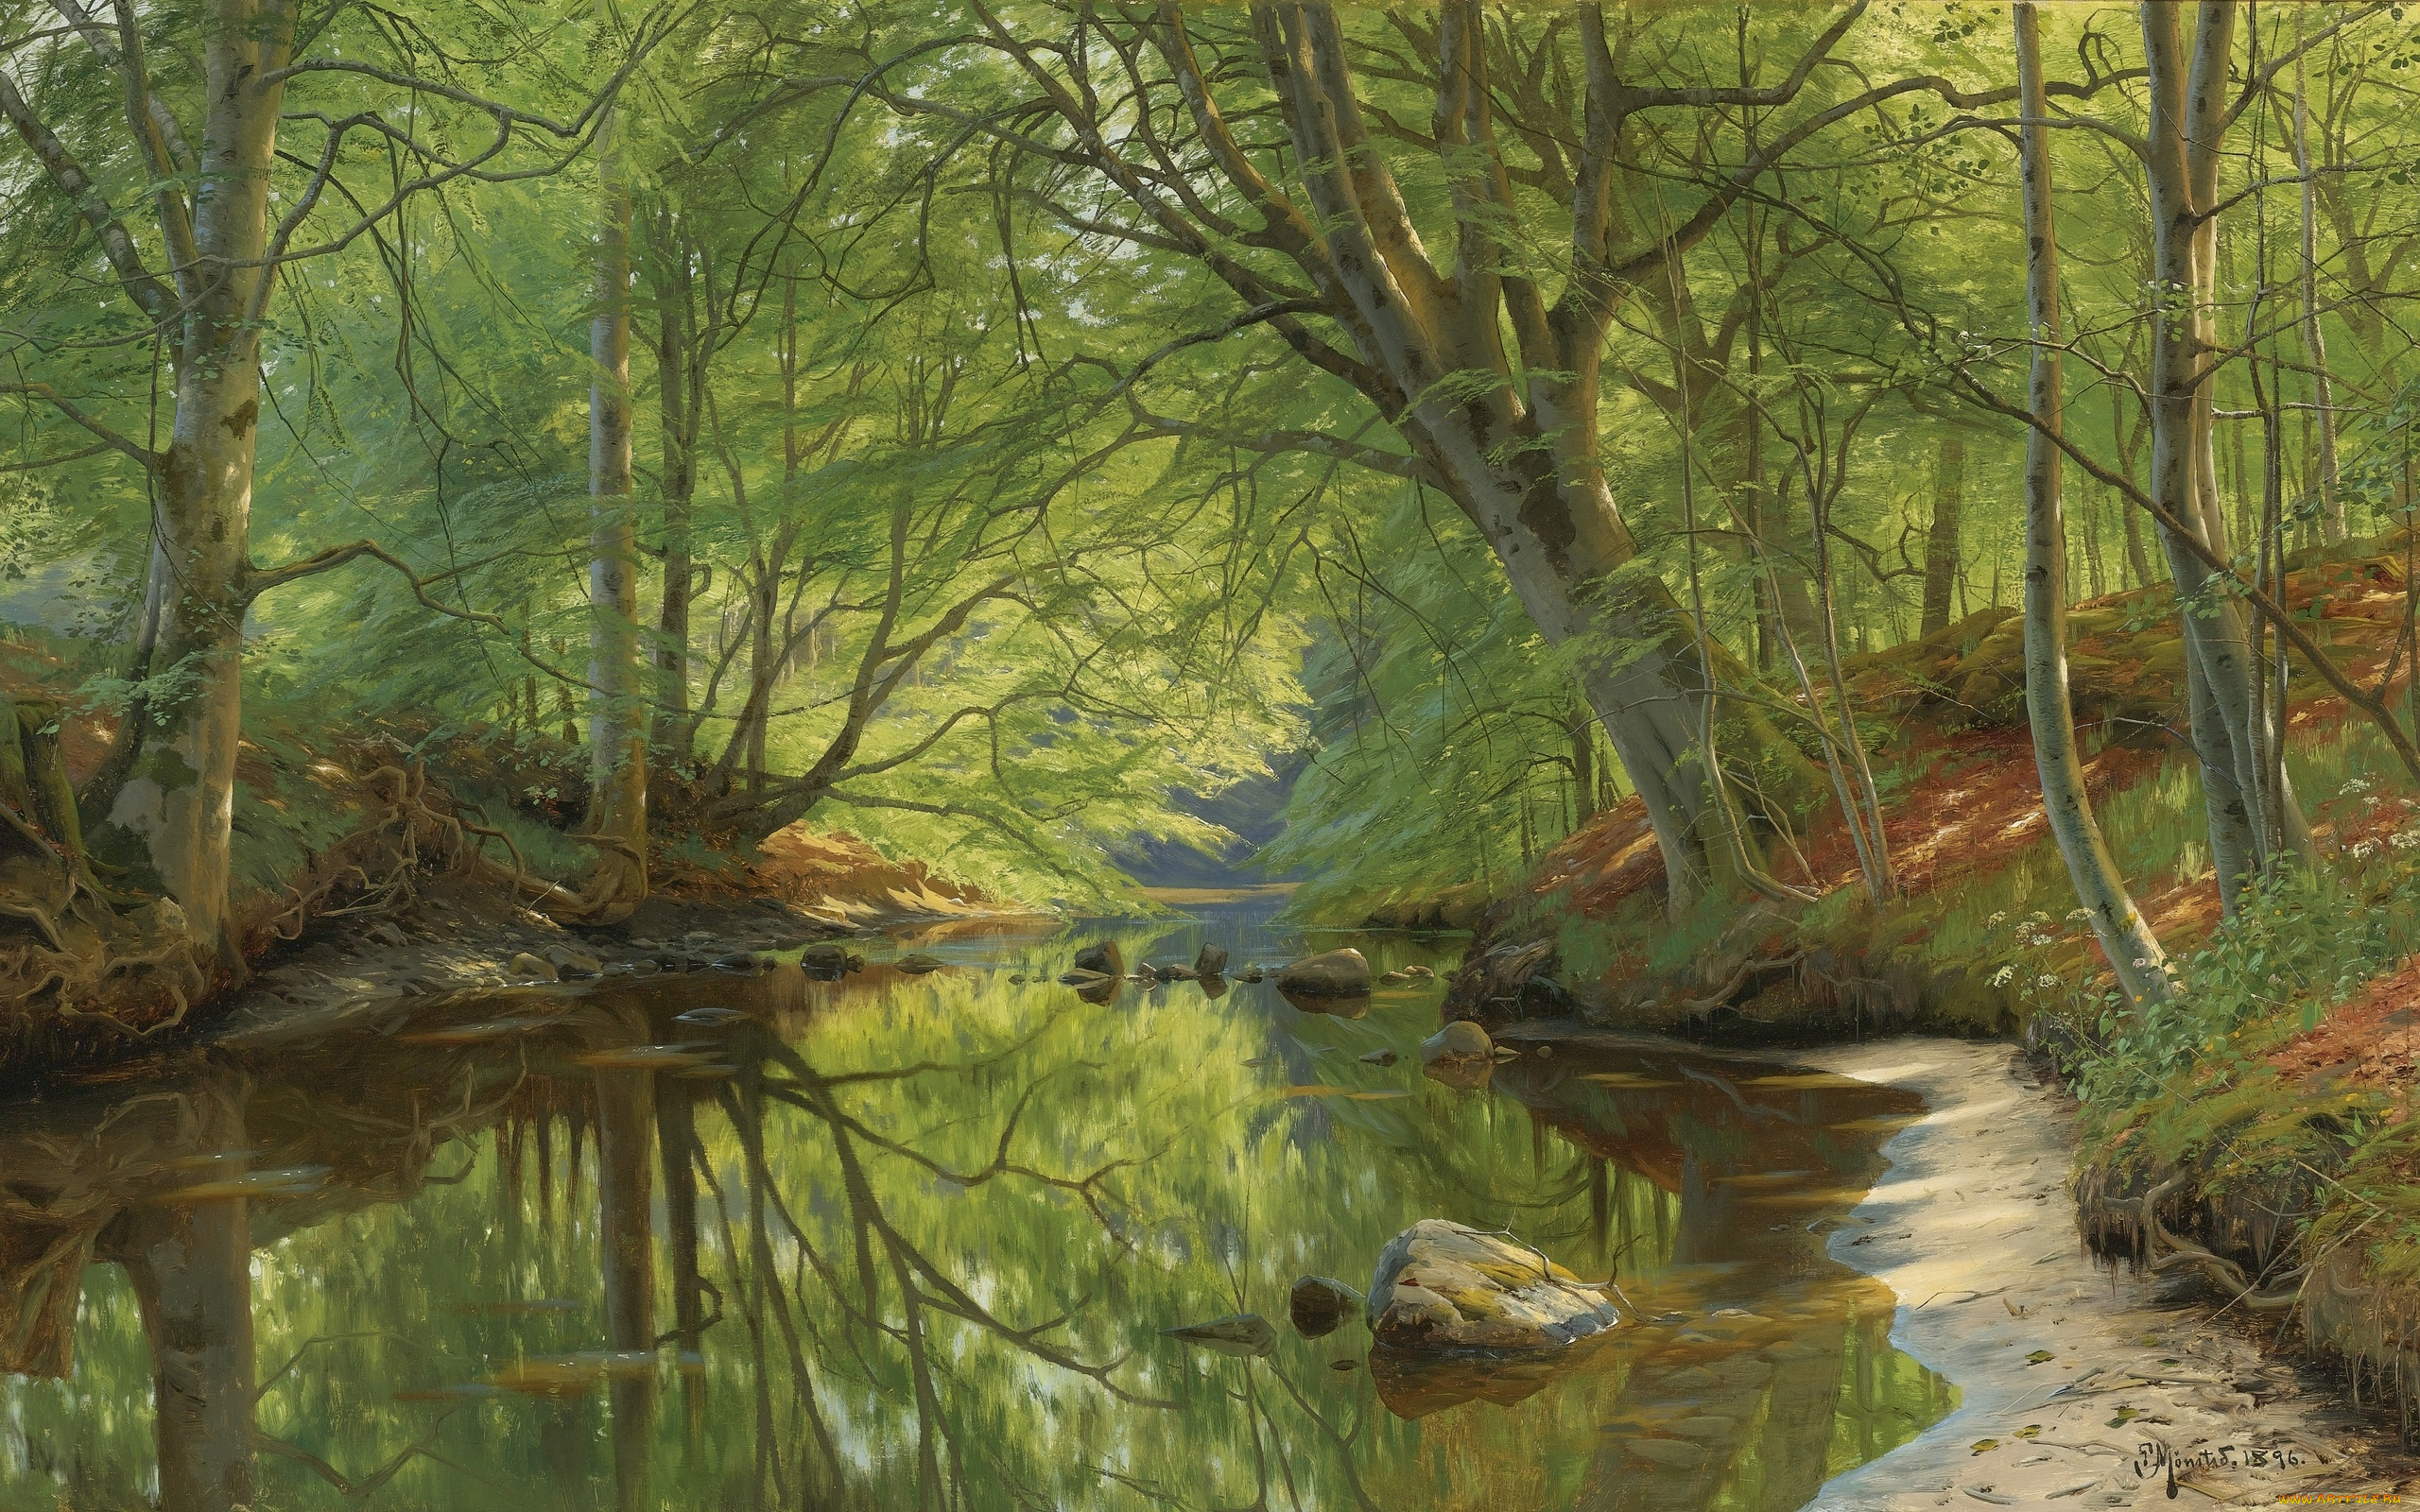 рисованное, живопись, 1896, peder, mоrk, mоnsted, лесной, ручей, danish, realist, painter, forest, stream, датский, живописец, петер, мёрк, мёнстед